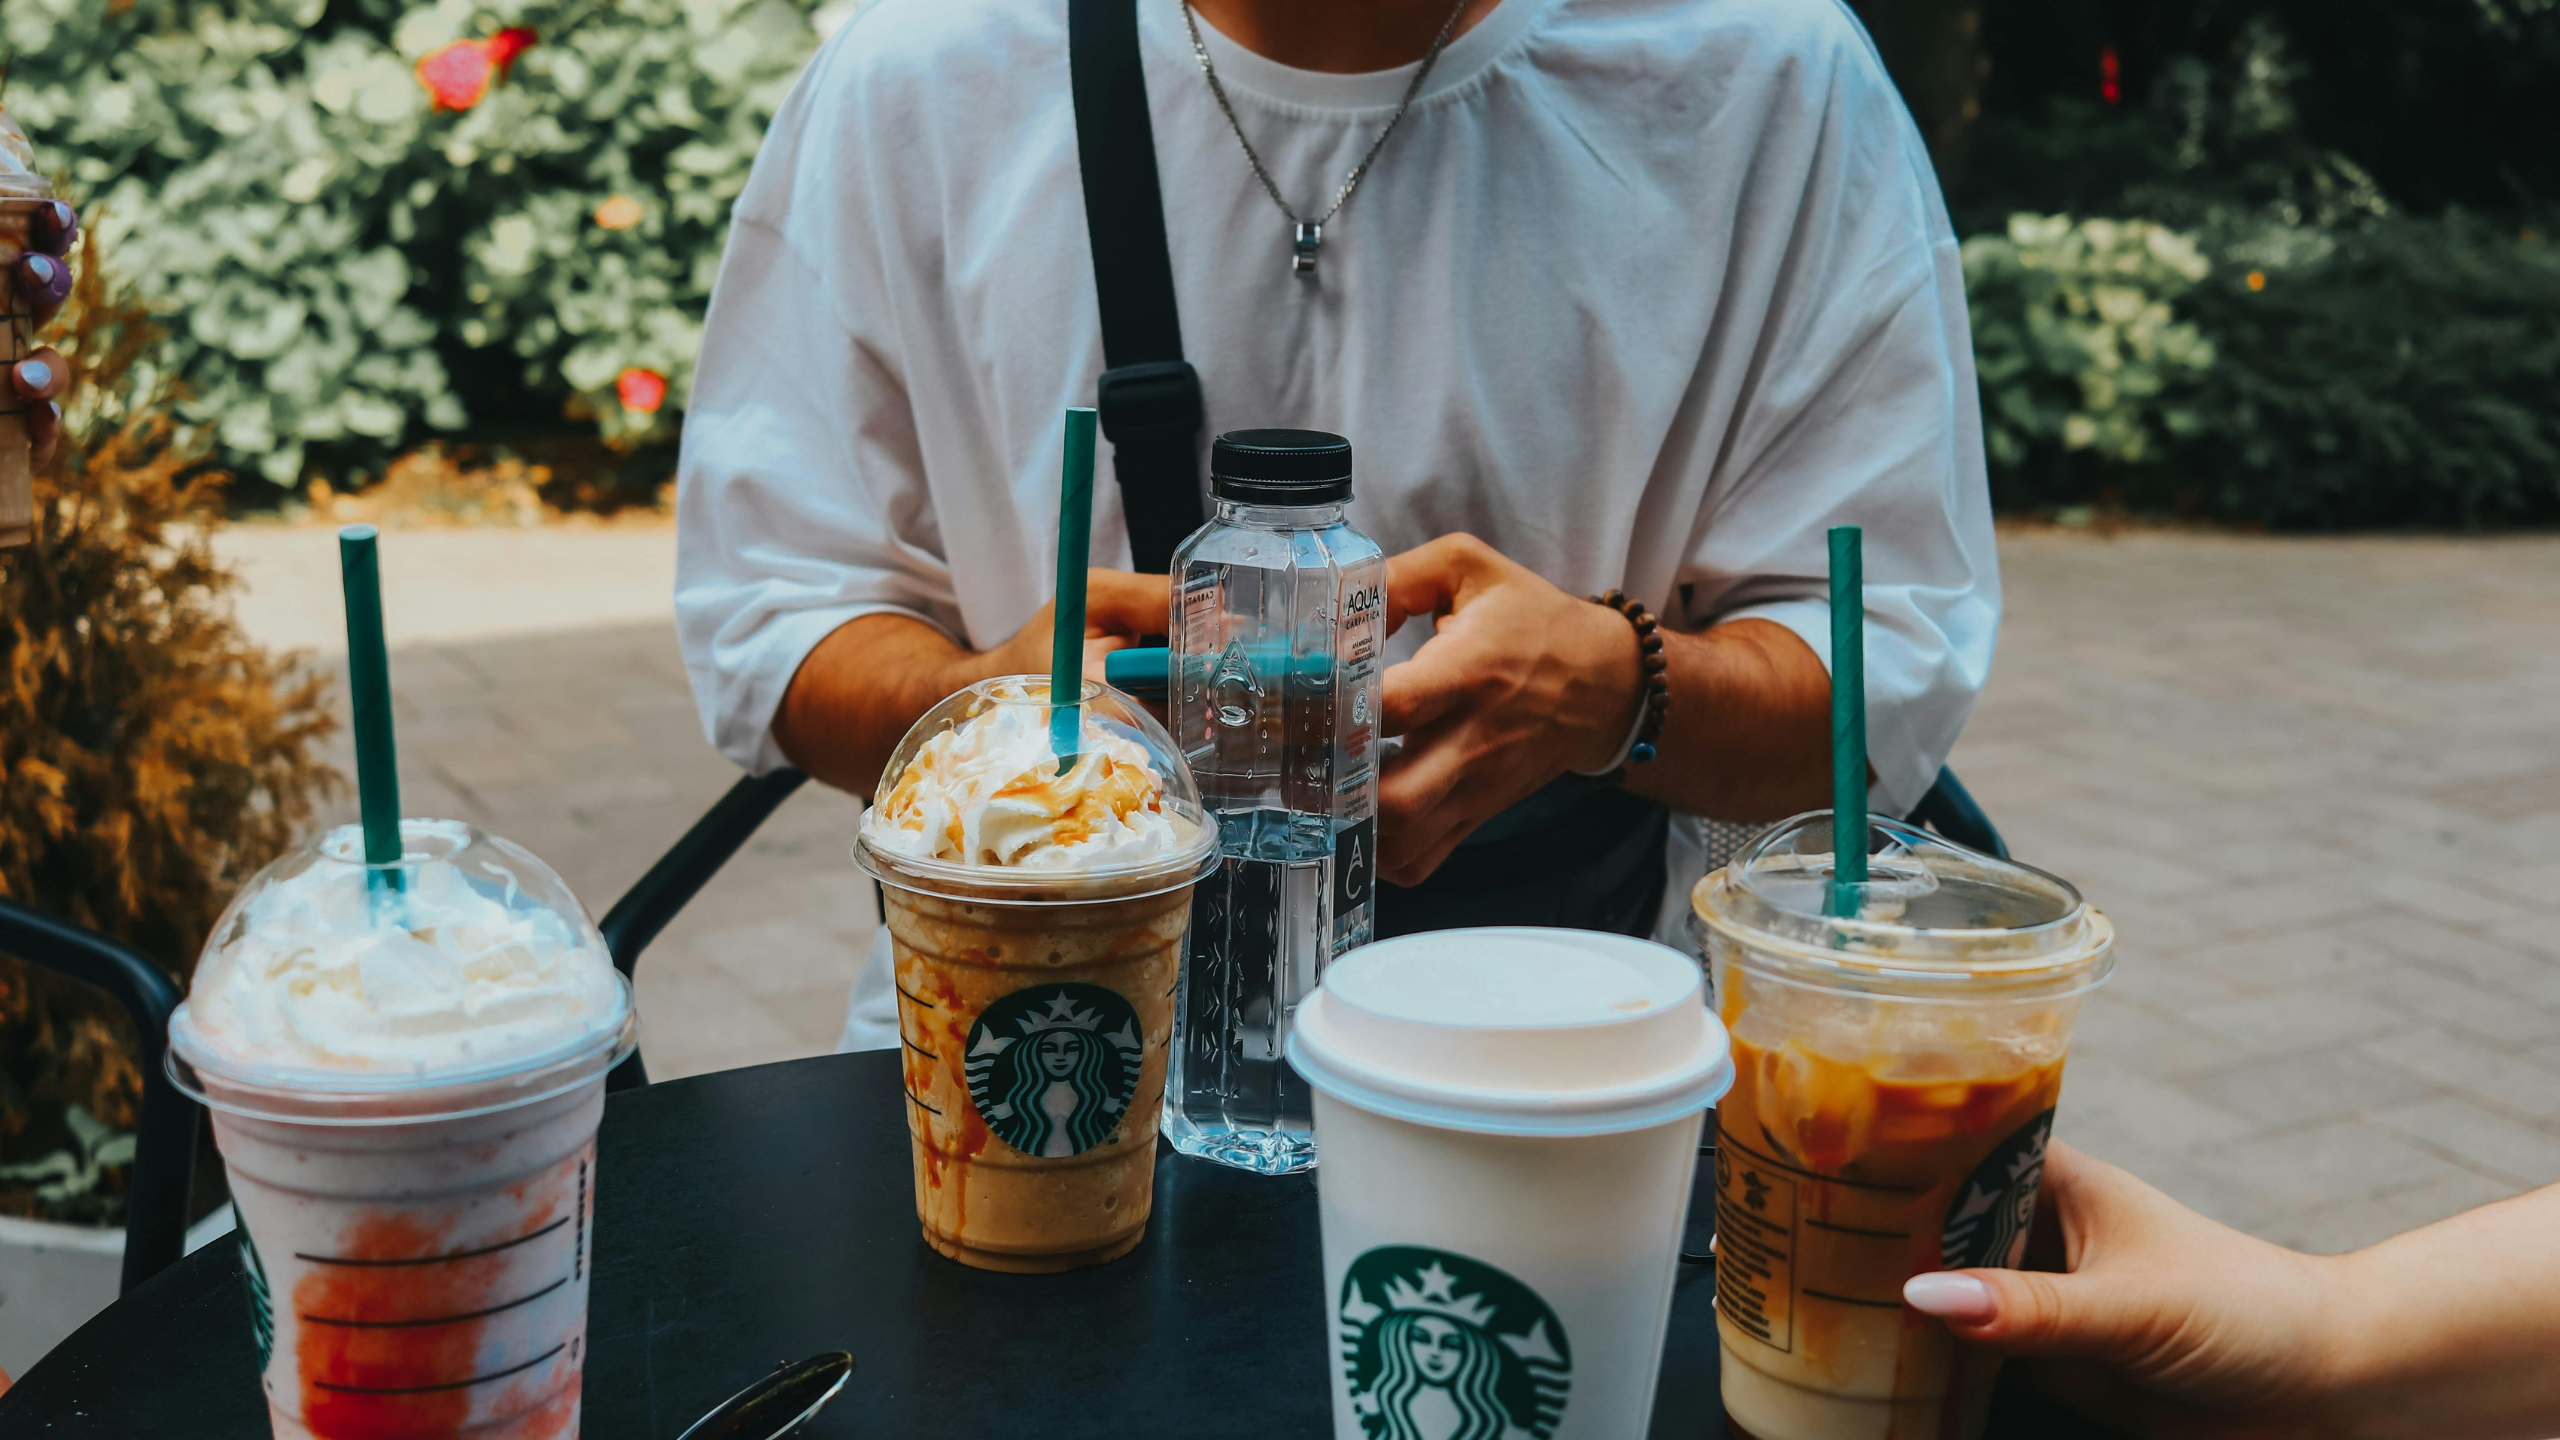 L’ancien PDG de Starbucks demande aux dirigeants de passer du temps avec « ceux qui portent un tablier vert » pour résoudre les problèmes croissants aux États-Unis